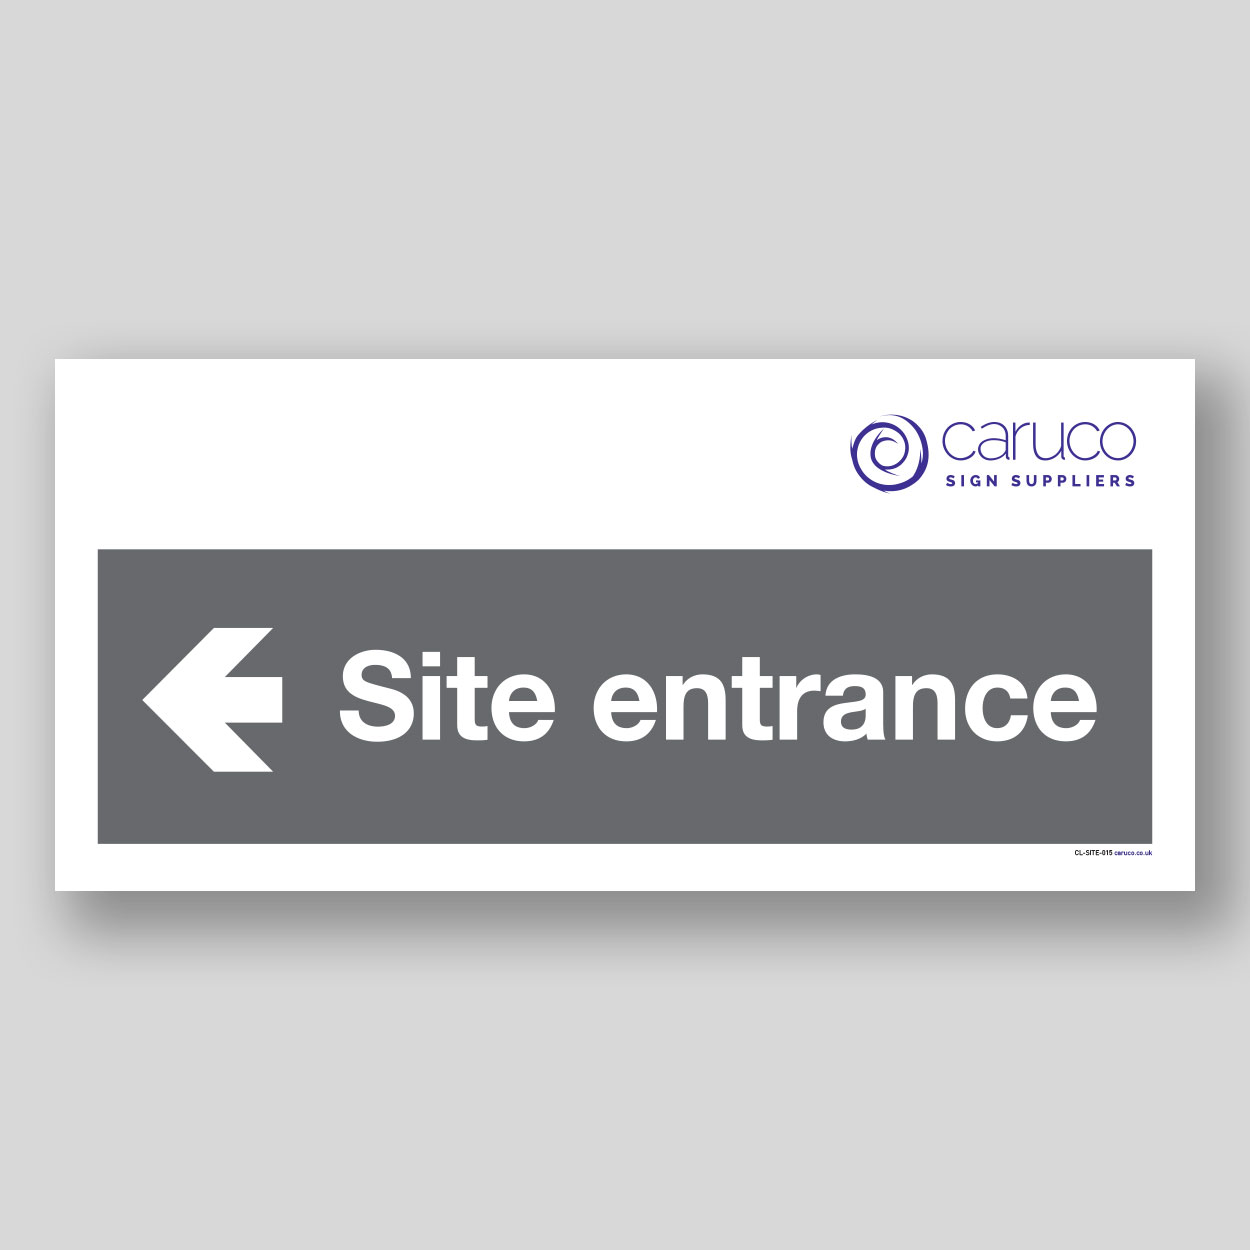 CL-SITE-015 Site entrance with left arrow